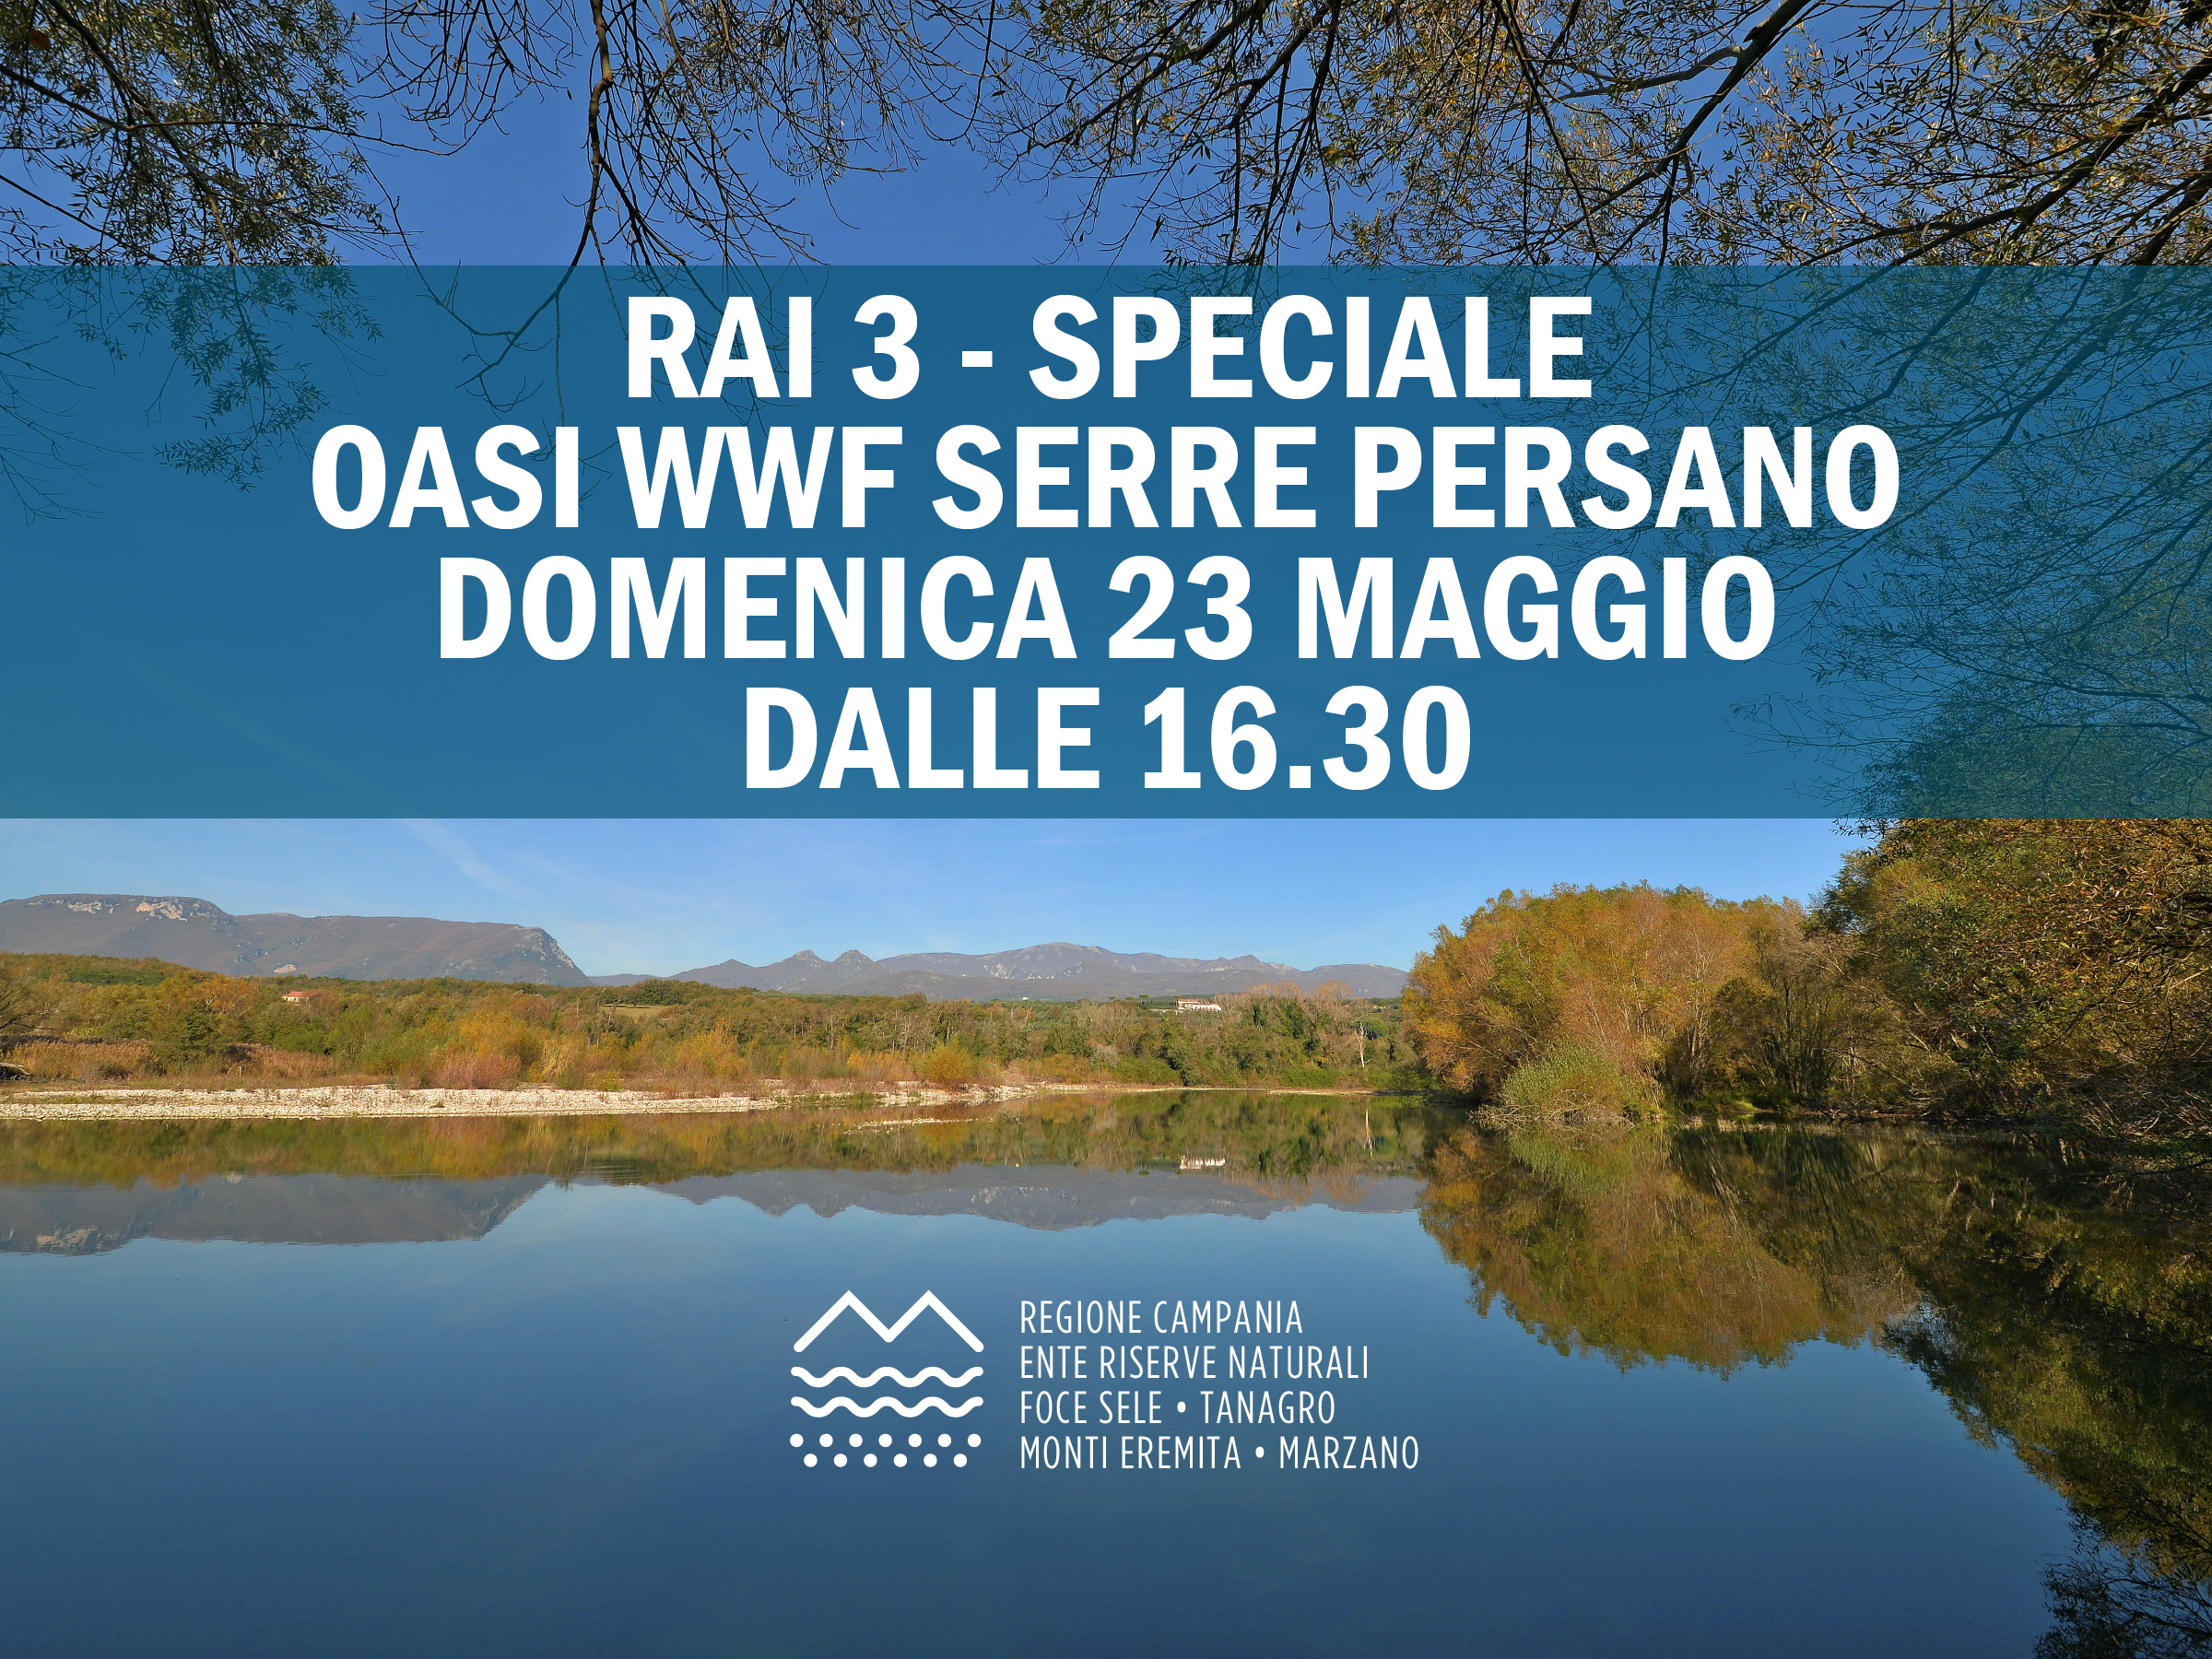 RAI 3 - Speciale Oasi WWF Serre Persano - Domenica 30 maggio